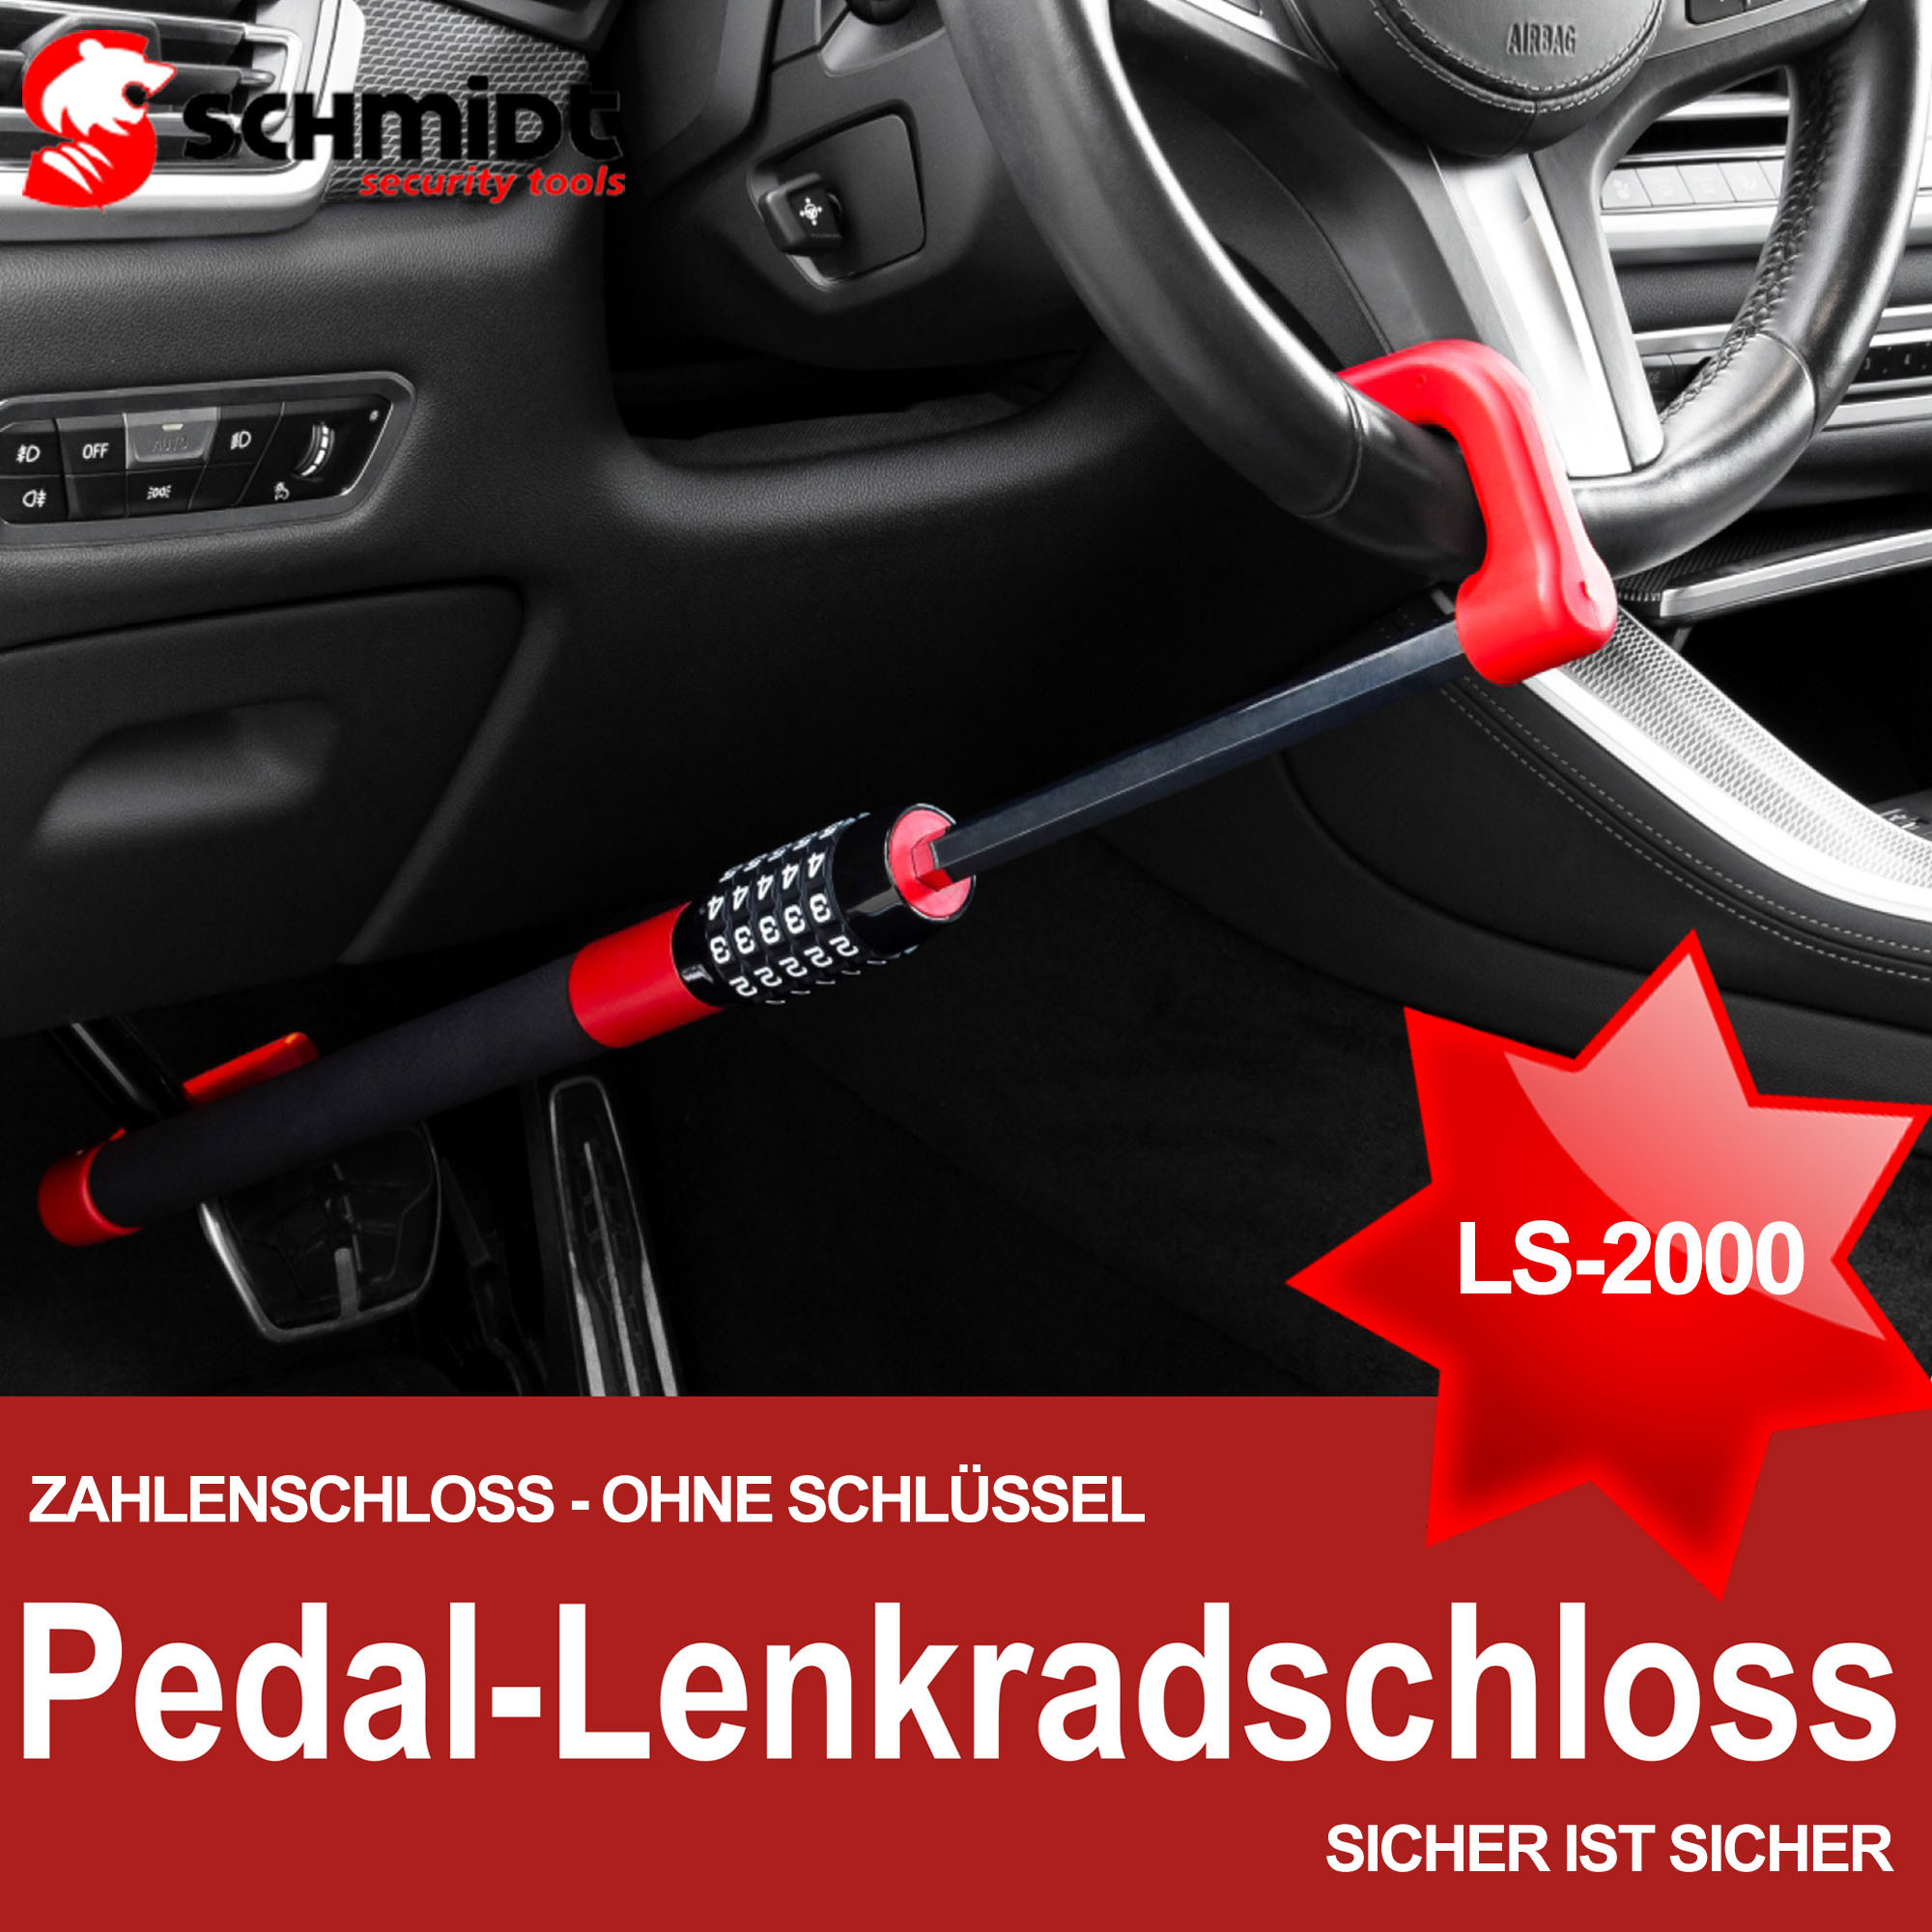 Lenkradschloss, SECURITY Mehrfarbig TOOLS LS-2000 SCHMIDT Diebstahlsicherung Pedalschloss Pedal-Lenkradschloss